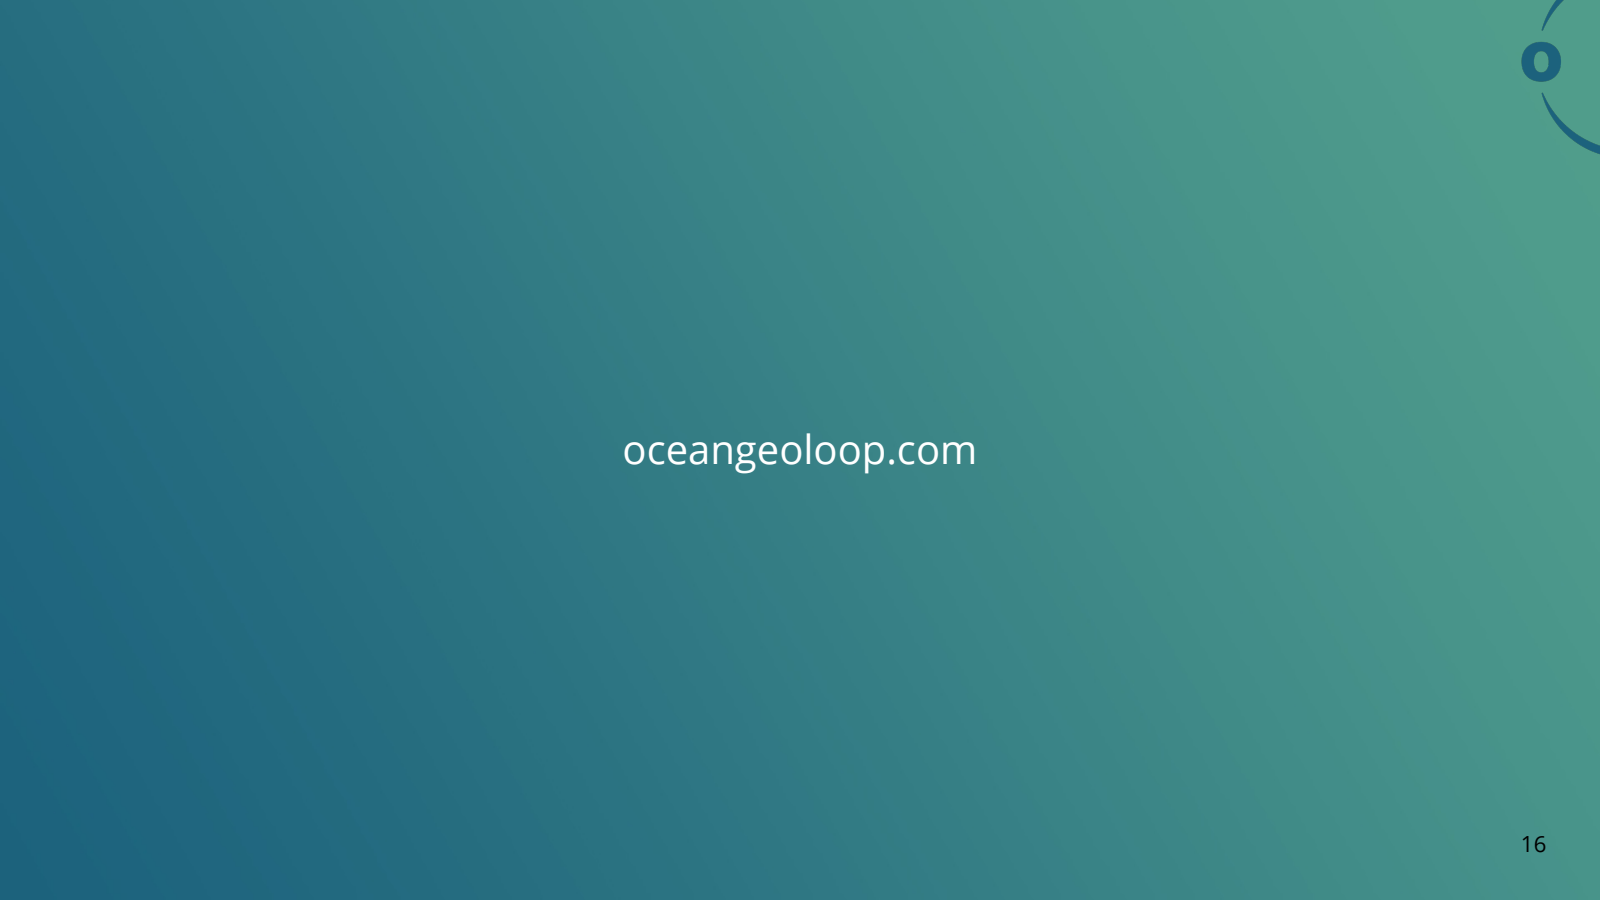 oceangeoloop.com 

1